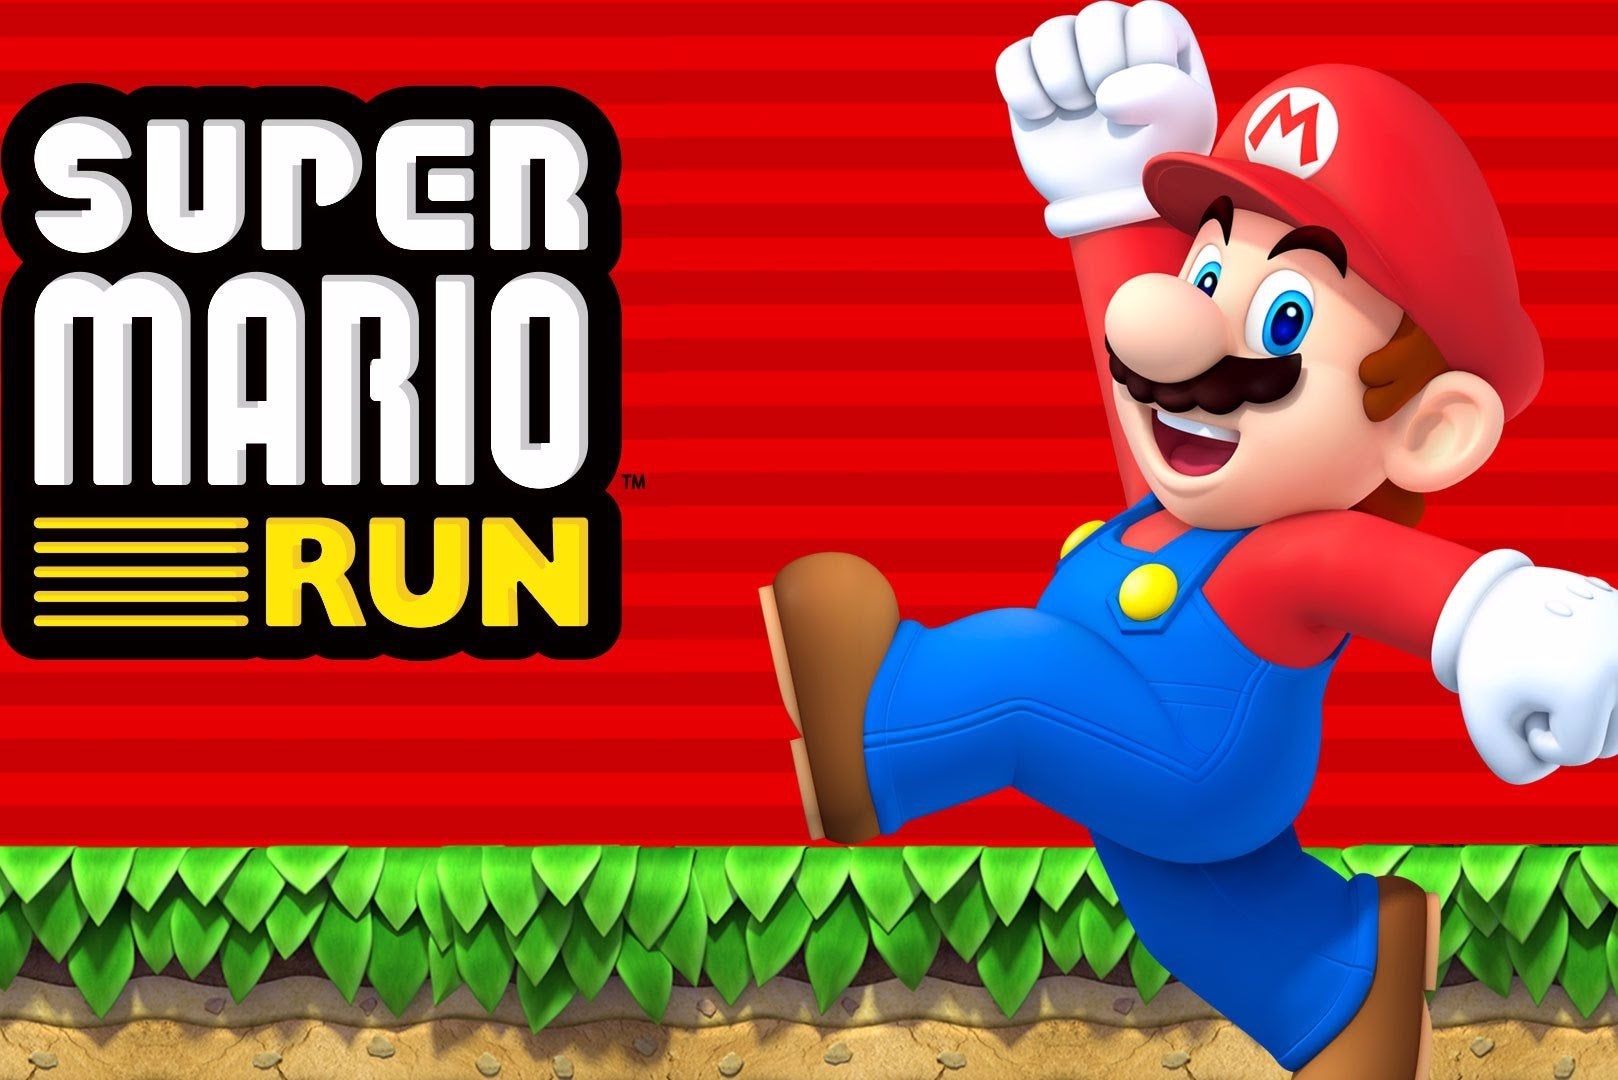 Immagine di Super Mario Run ha fatto registrare ben 150 milioni di download complessivi